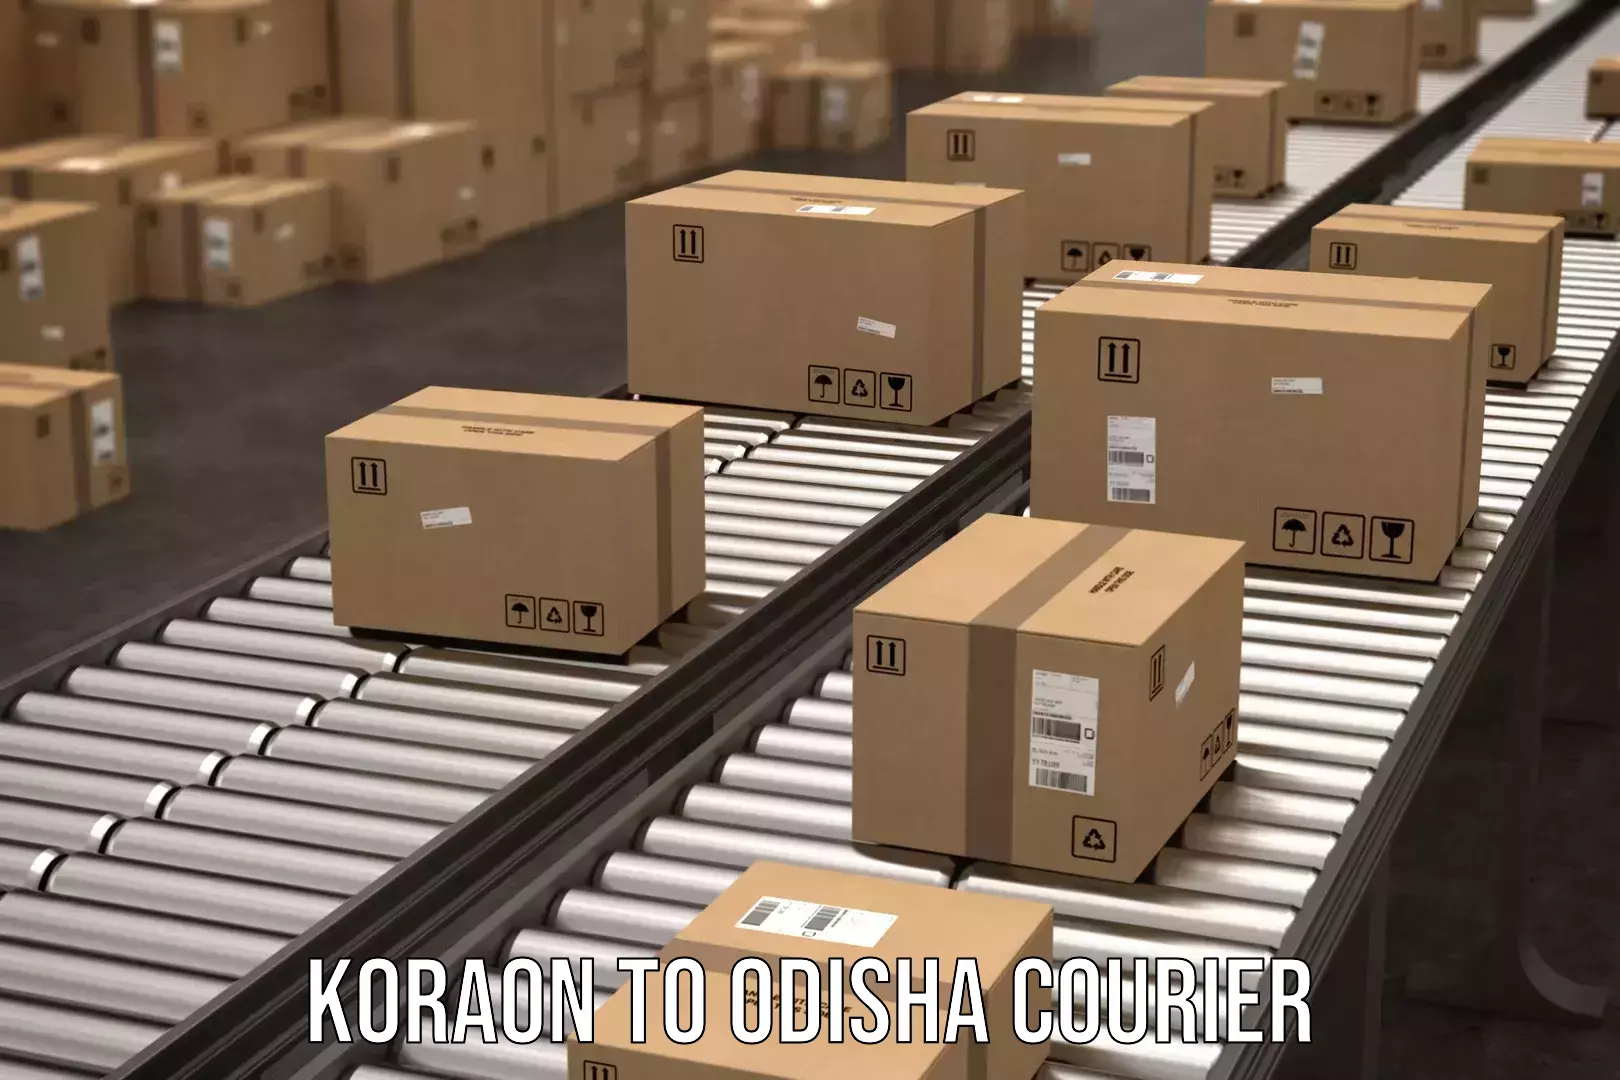 Express package handling Koraon to Komana